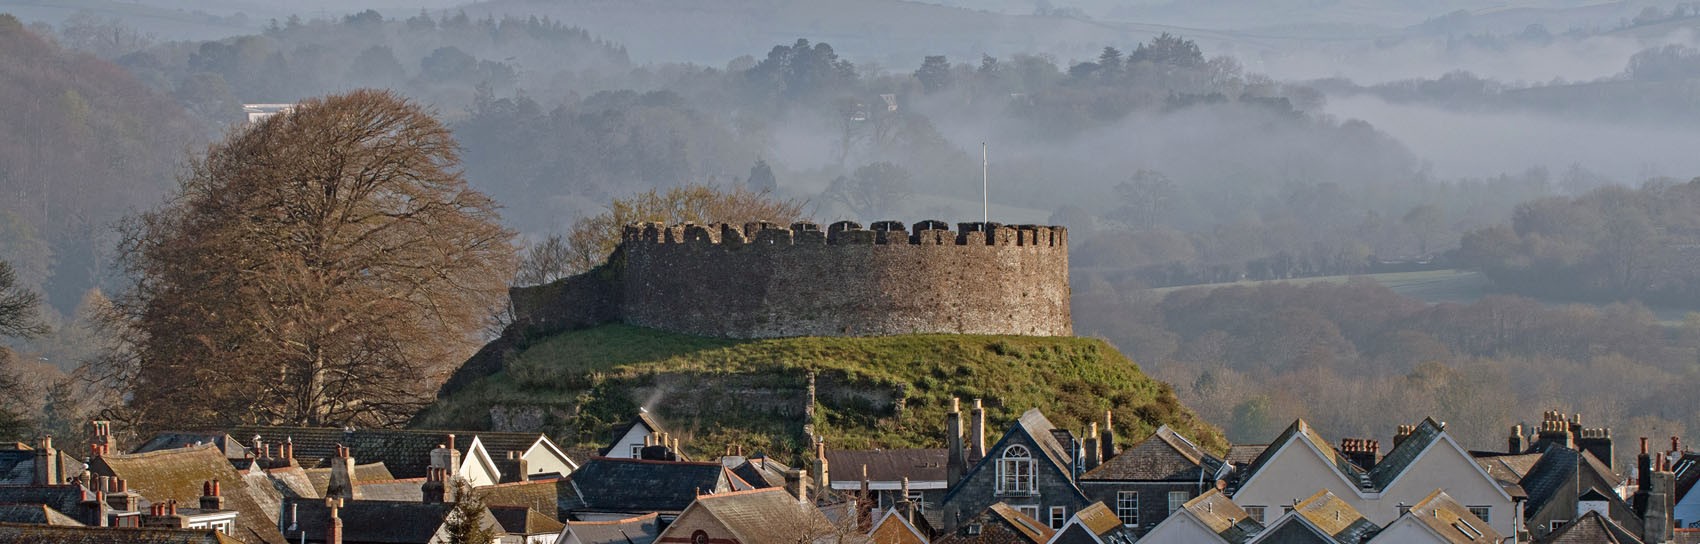 Totnes Castle in Devon. Photograph by ALEX GRAEME